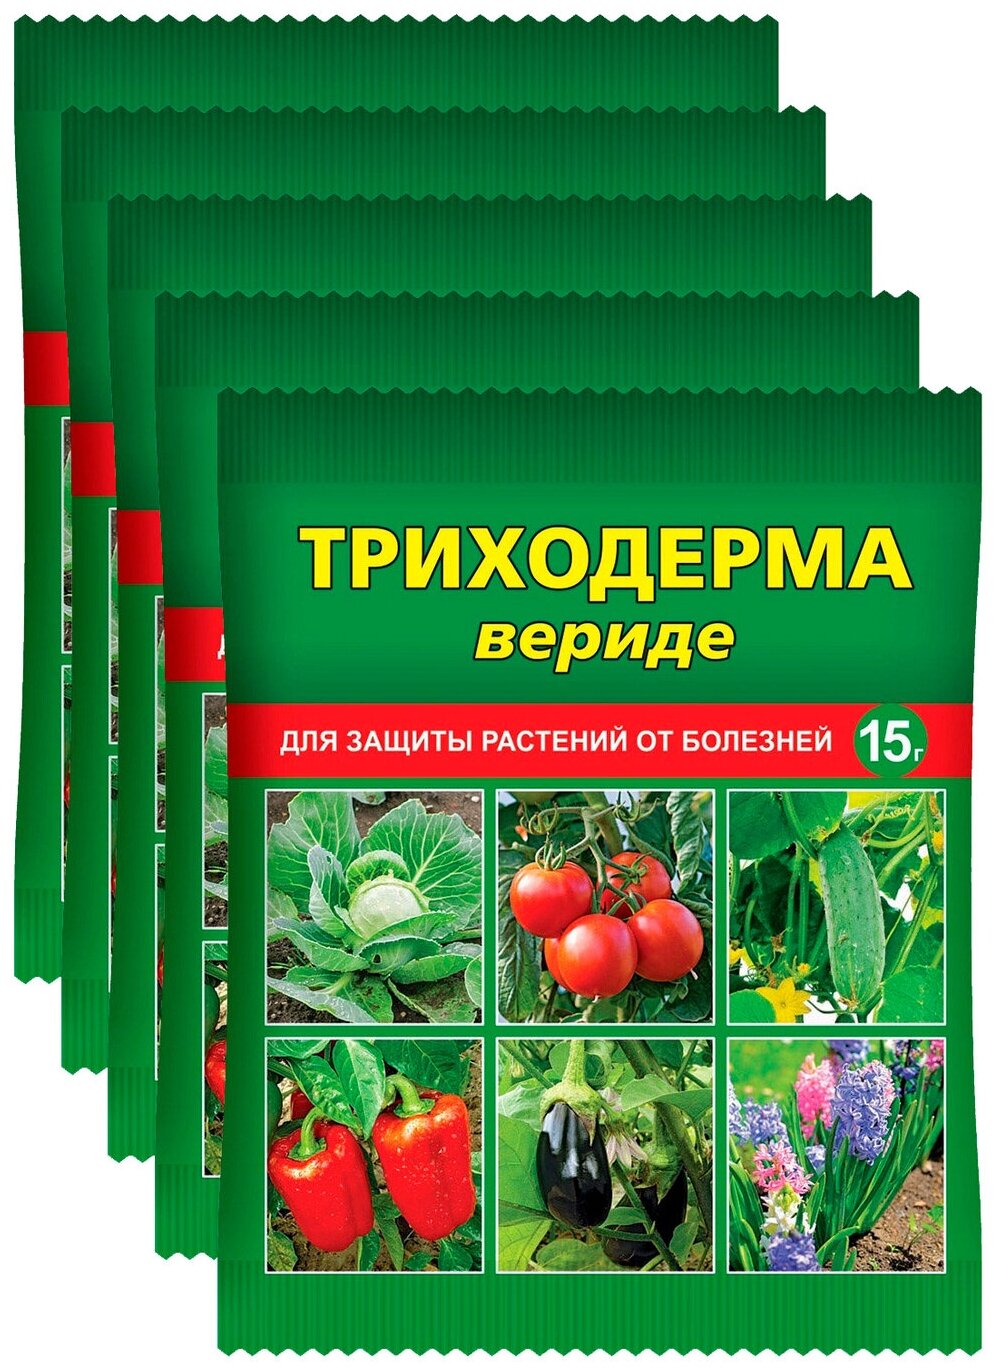 Триходерма вериде - биопрепарат для защиты растений от болезней, 5 шт. по 15 г